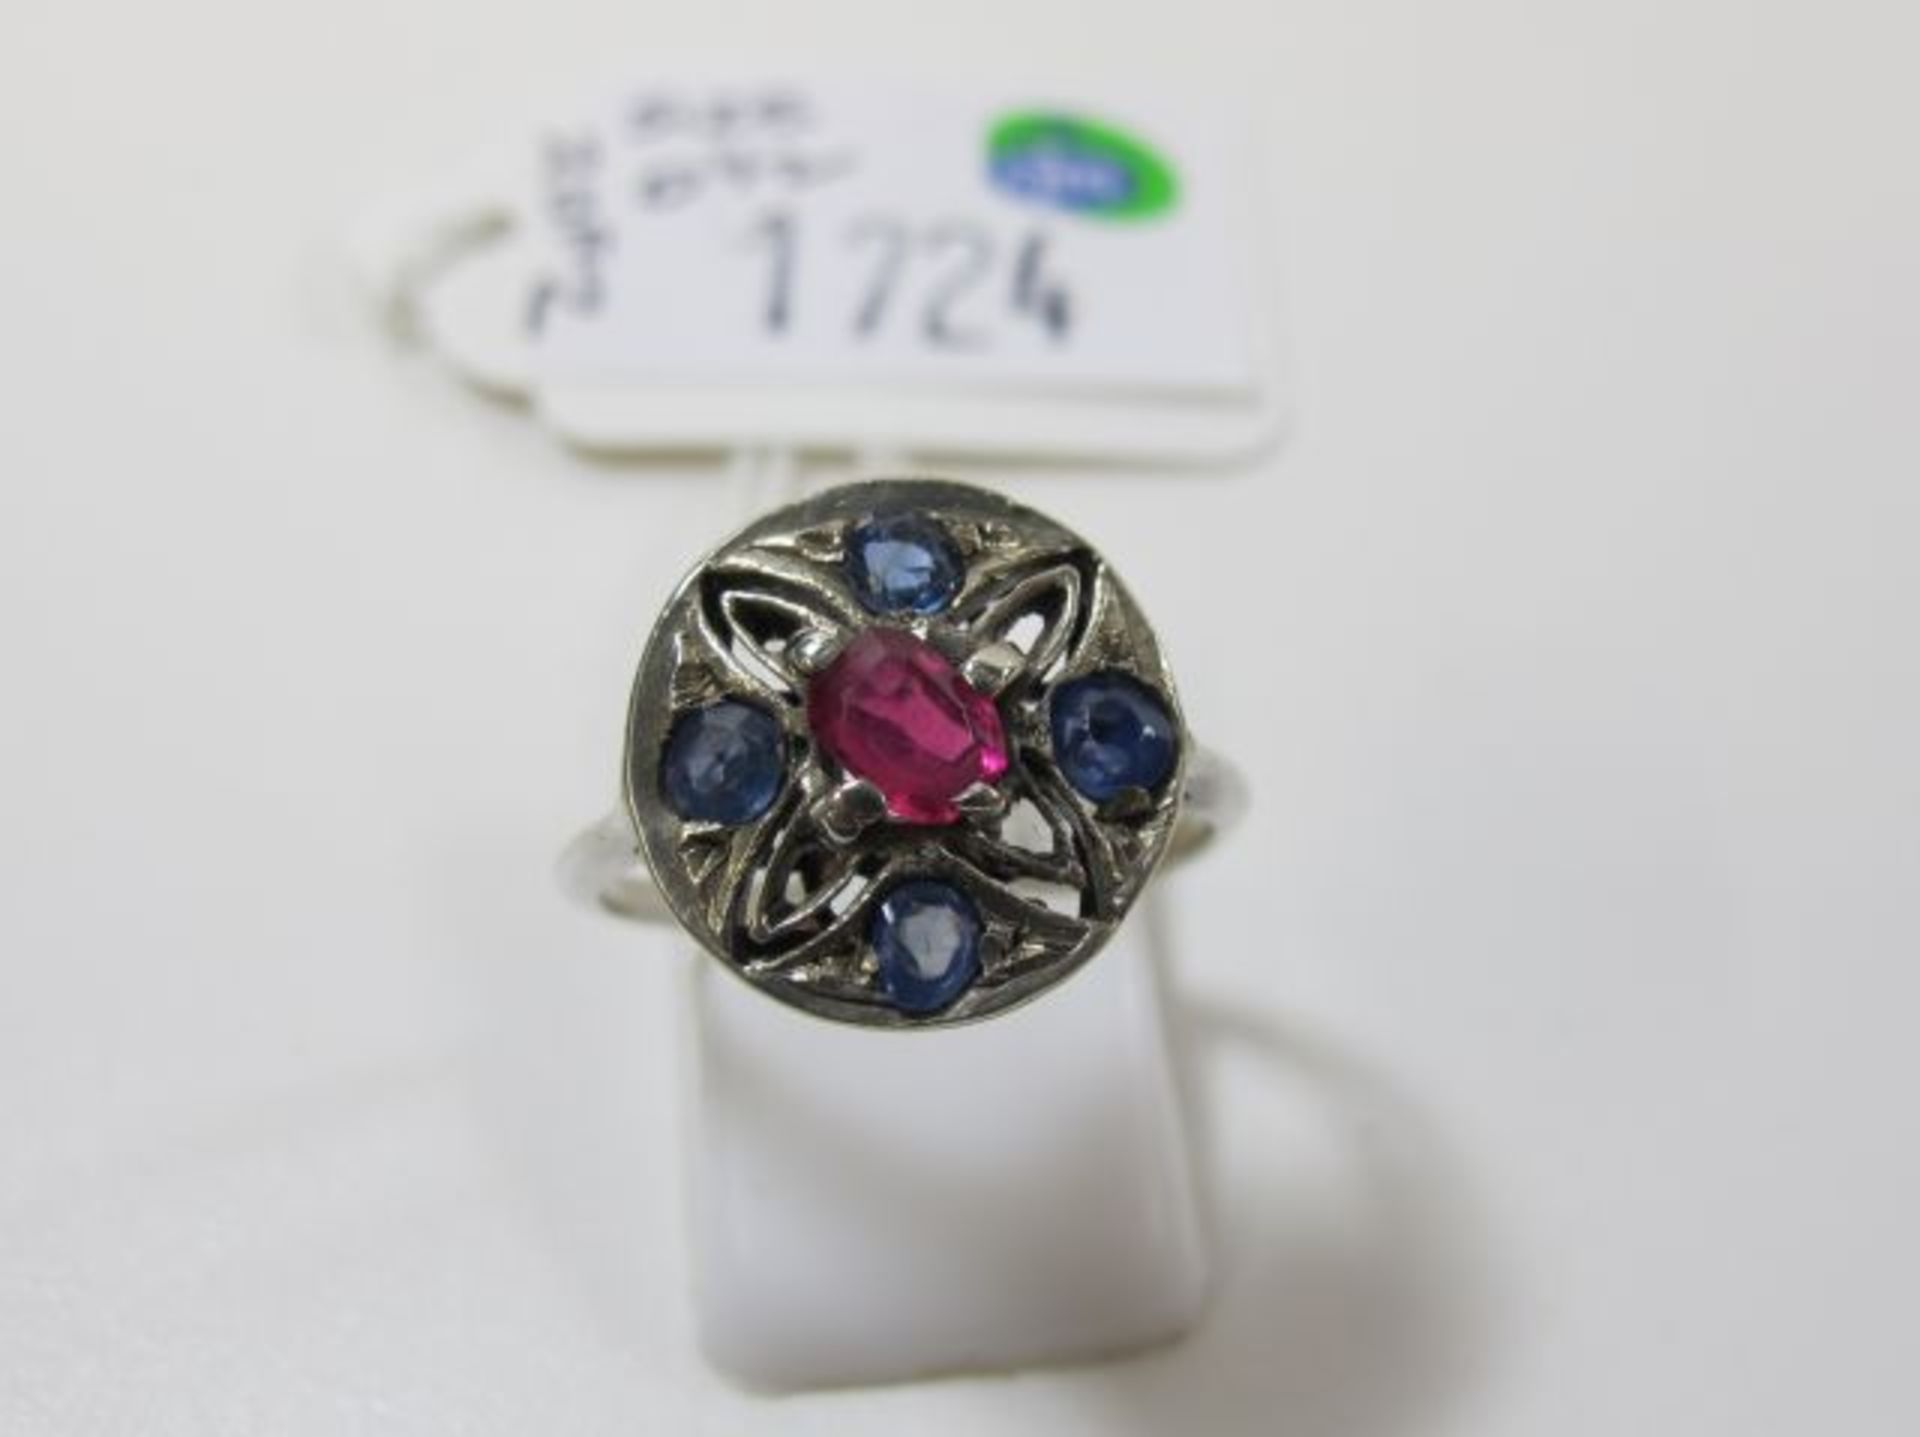 2 x Vintage Stone Set White Metal Ring (Sizes O½ & L) (est. £20-£40) - Image 2 of 2